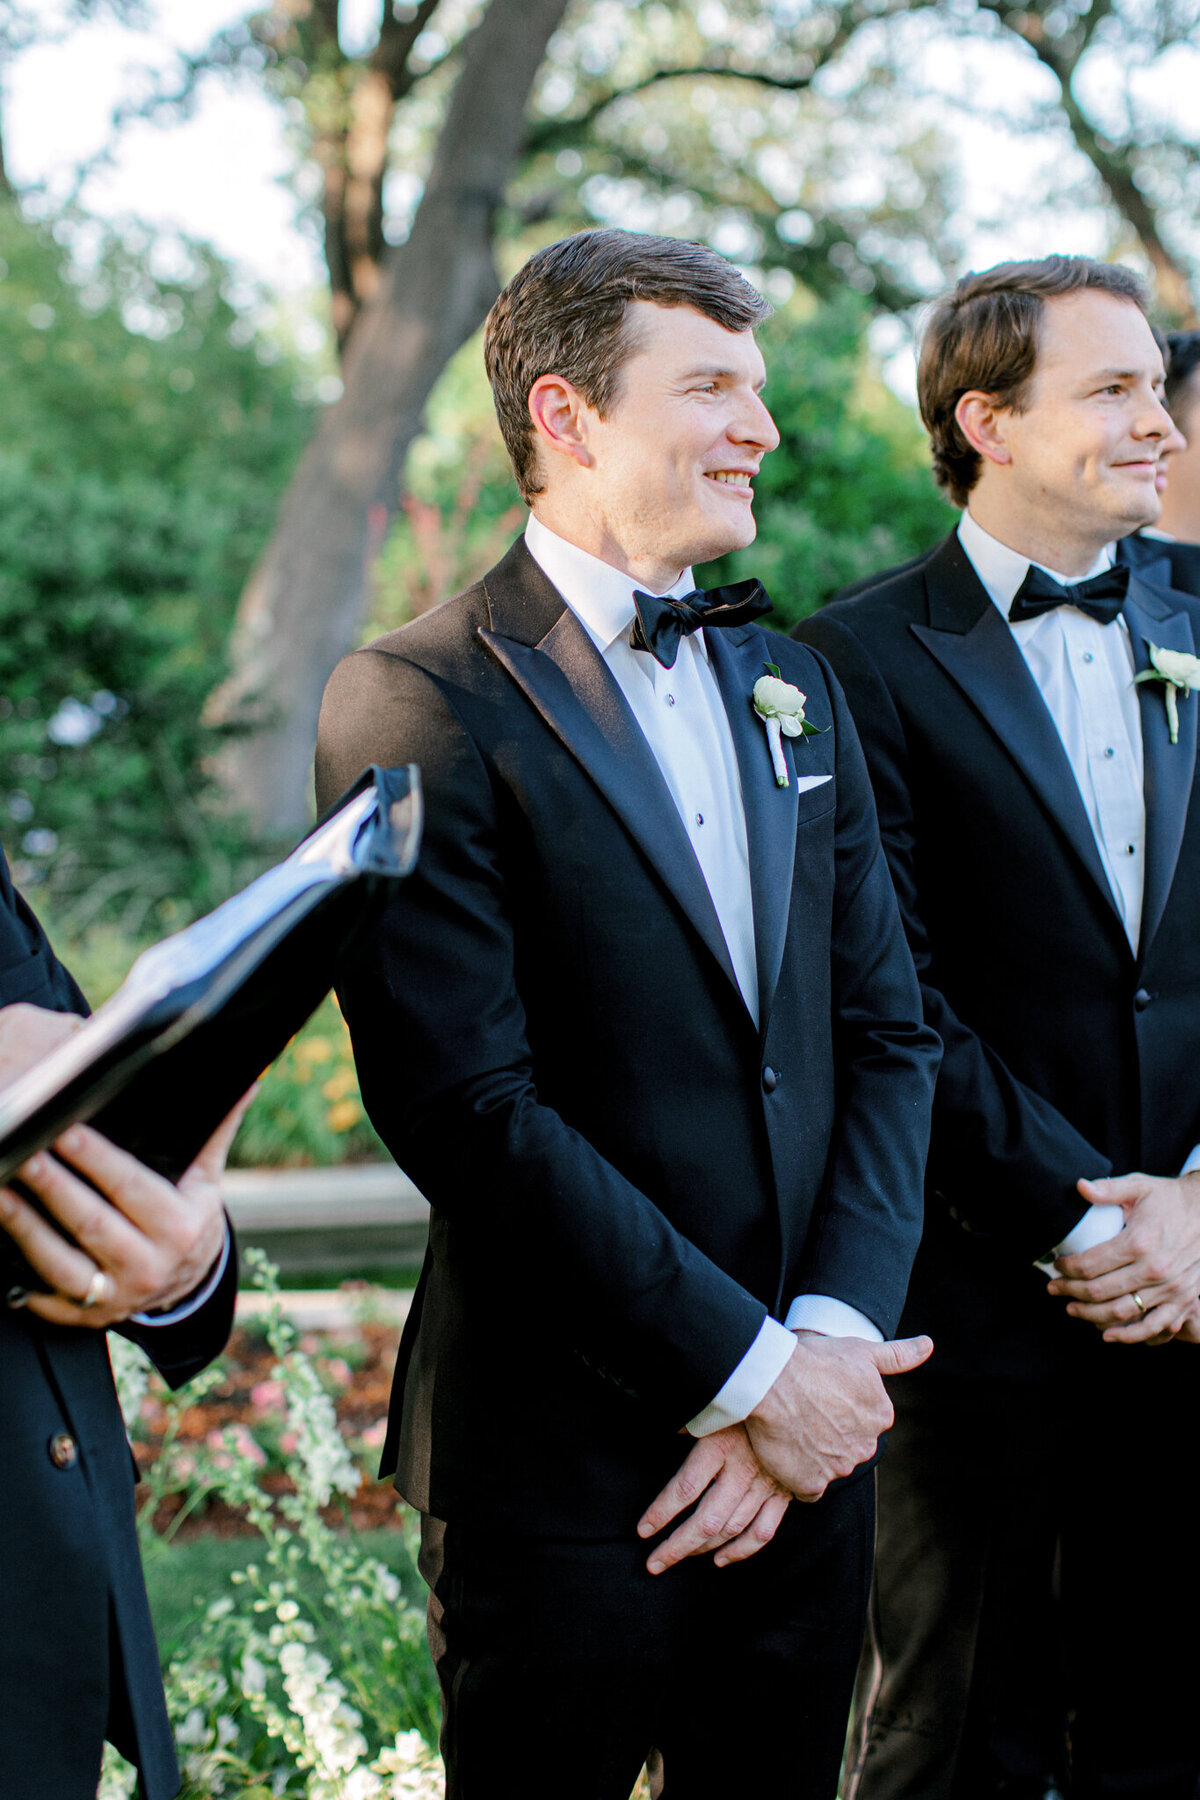 Gena & Matt's Wedding at the Dallas Arboretum | Dallas Wedding Photographer | Sami Kathryn Photography-133